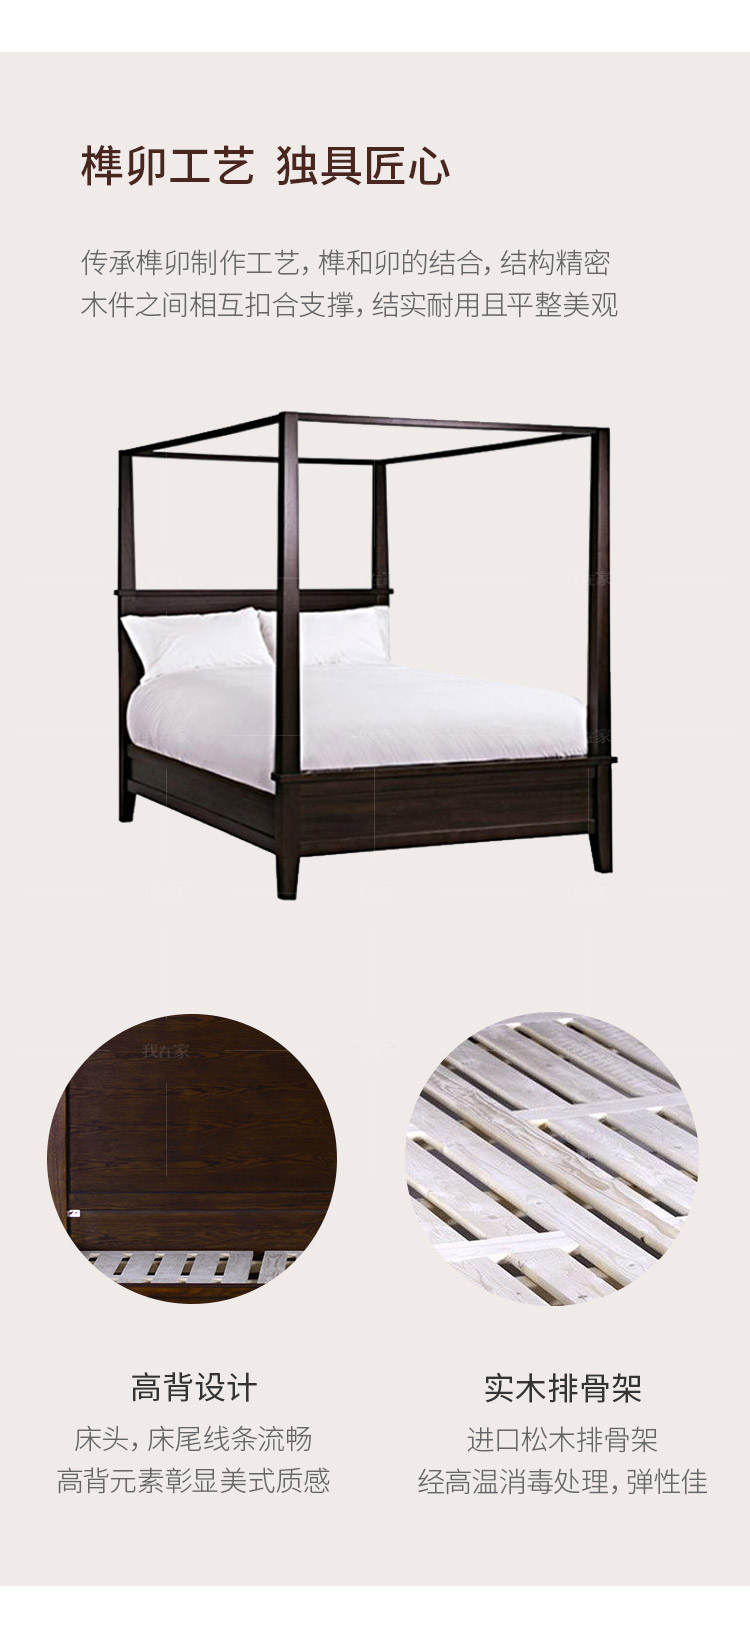 简约美式风格乔治四柱床的家具详细介绍